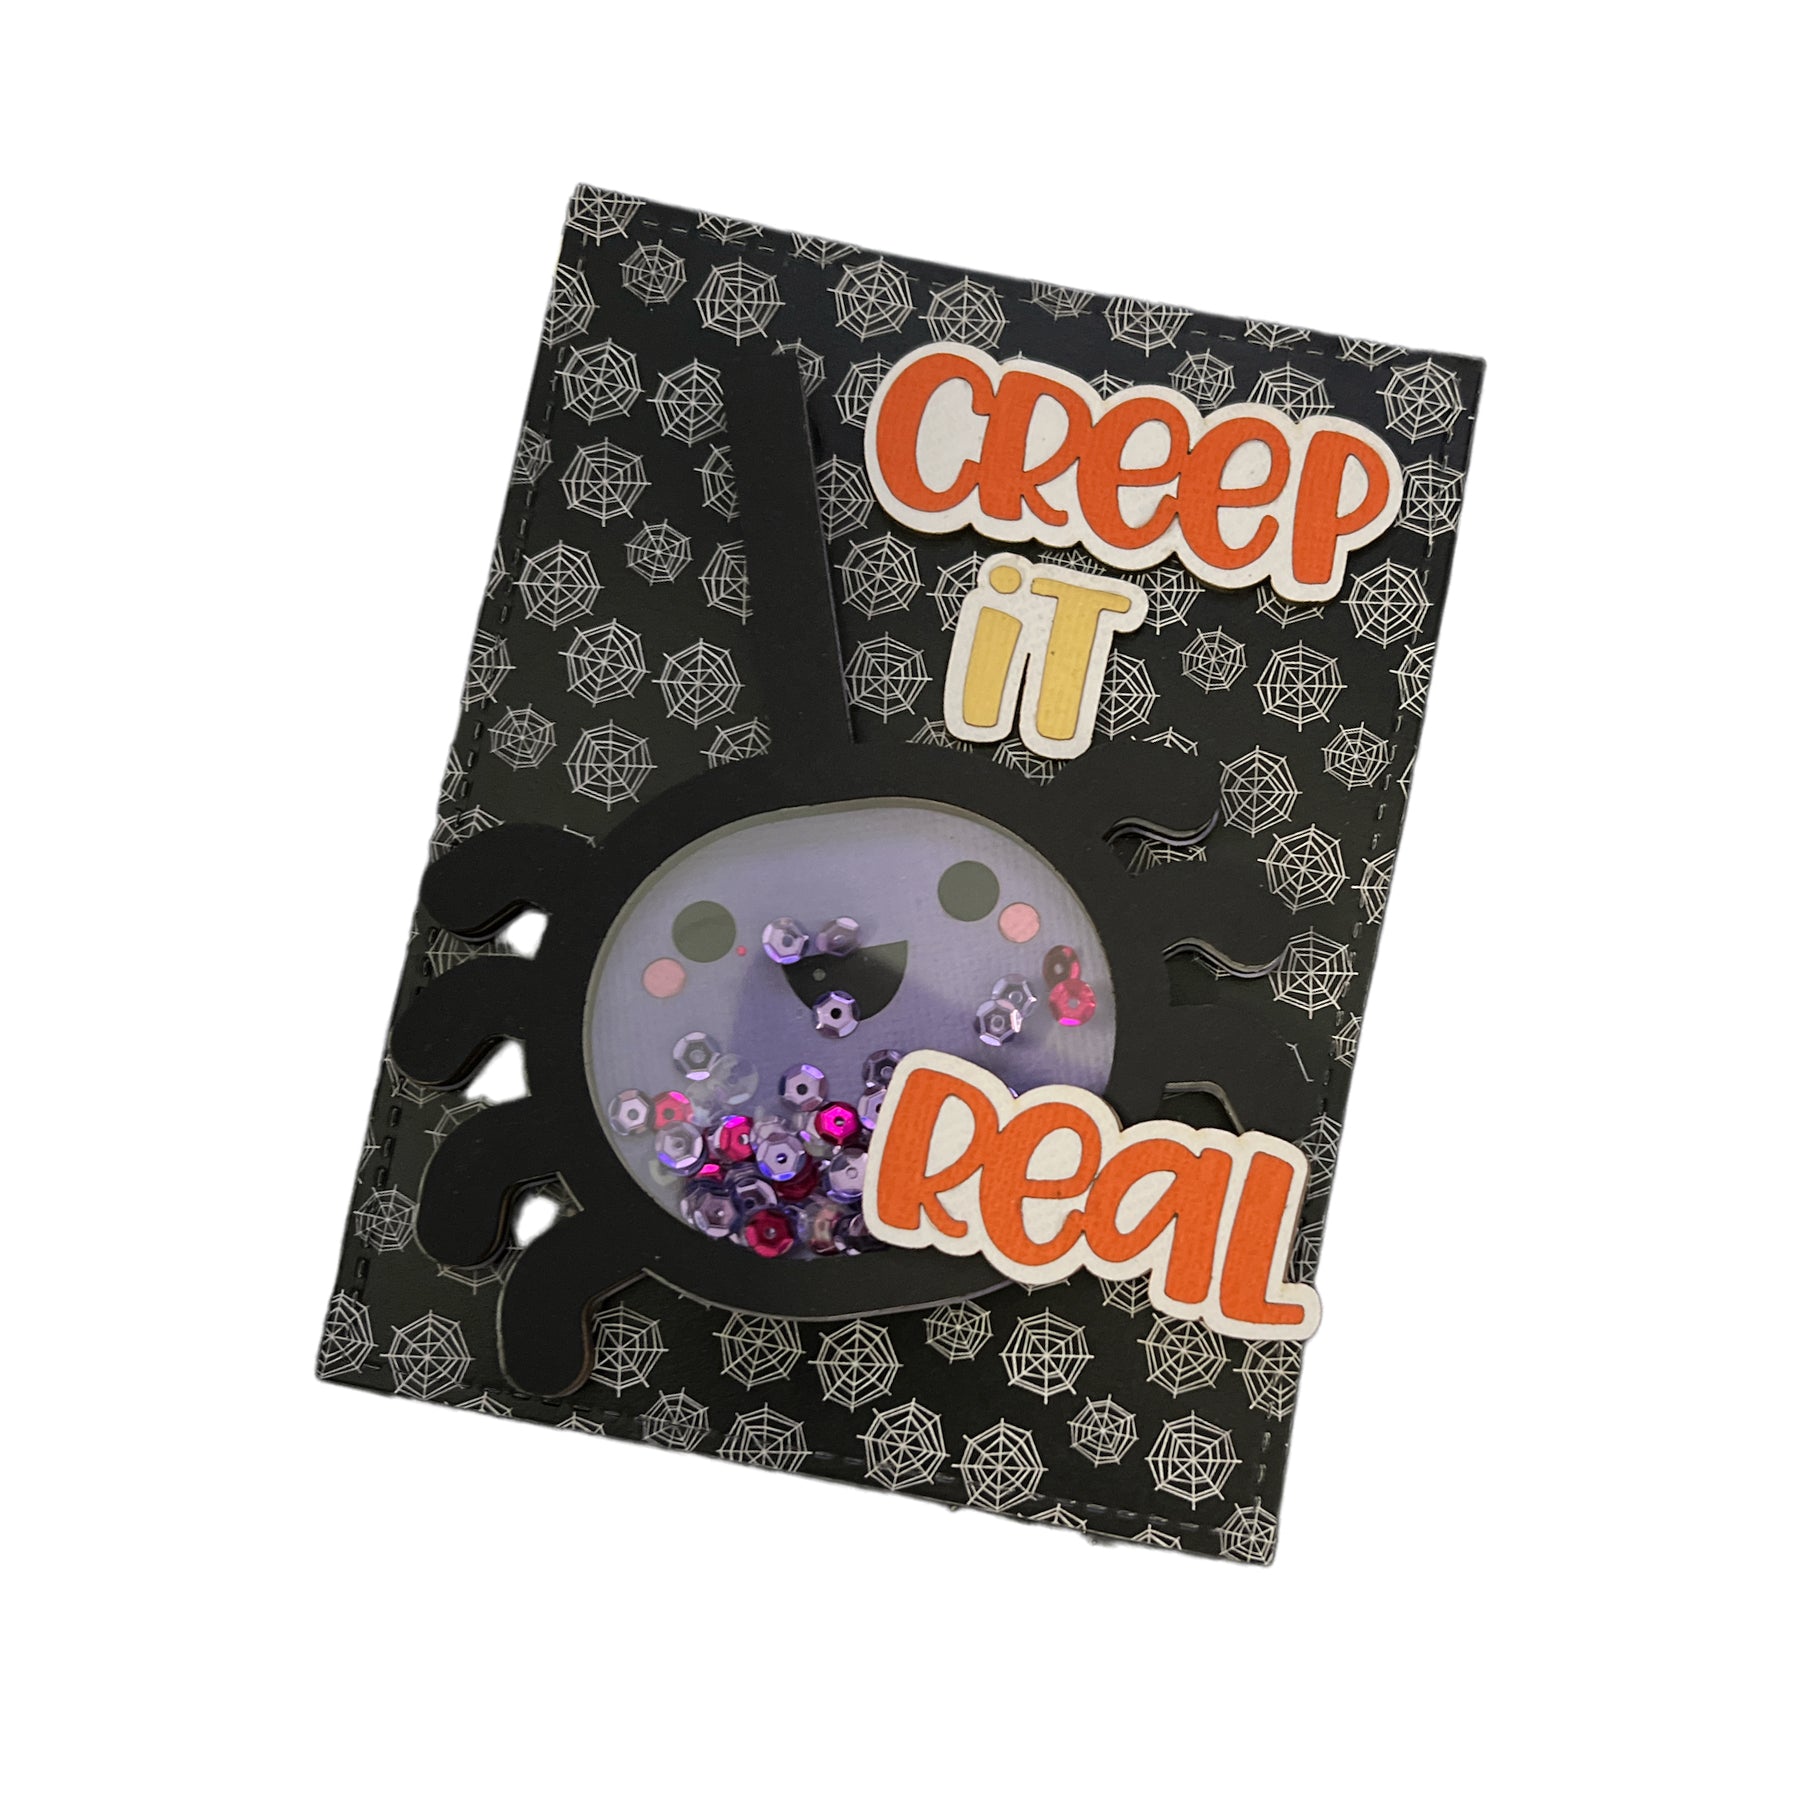 Creep It Real Card Kit